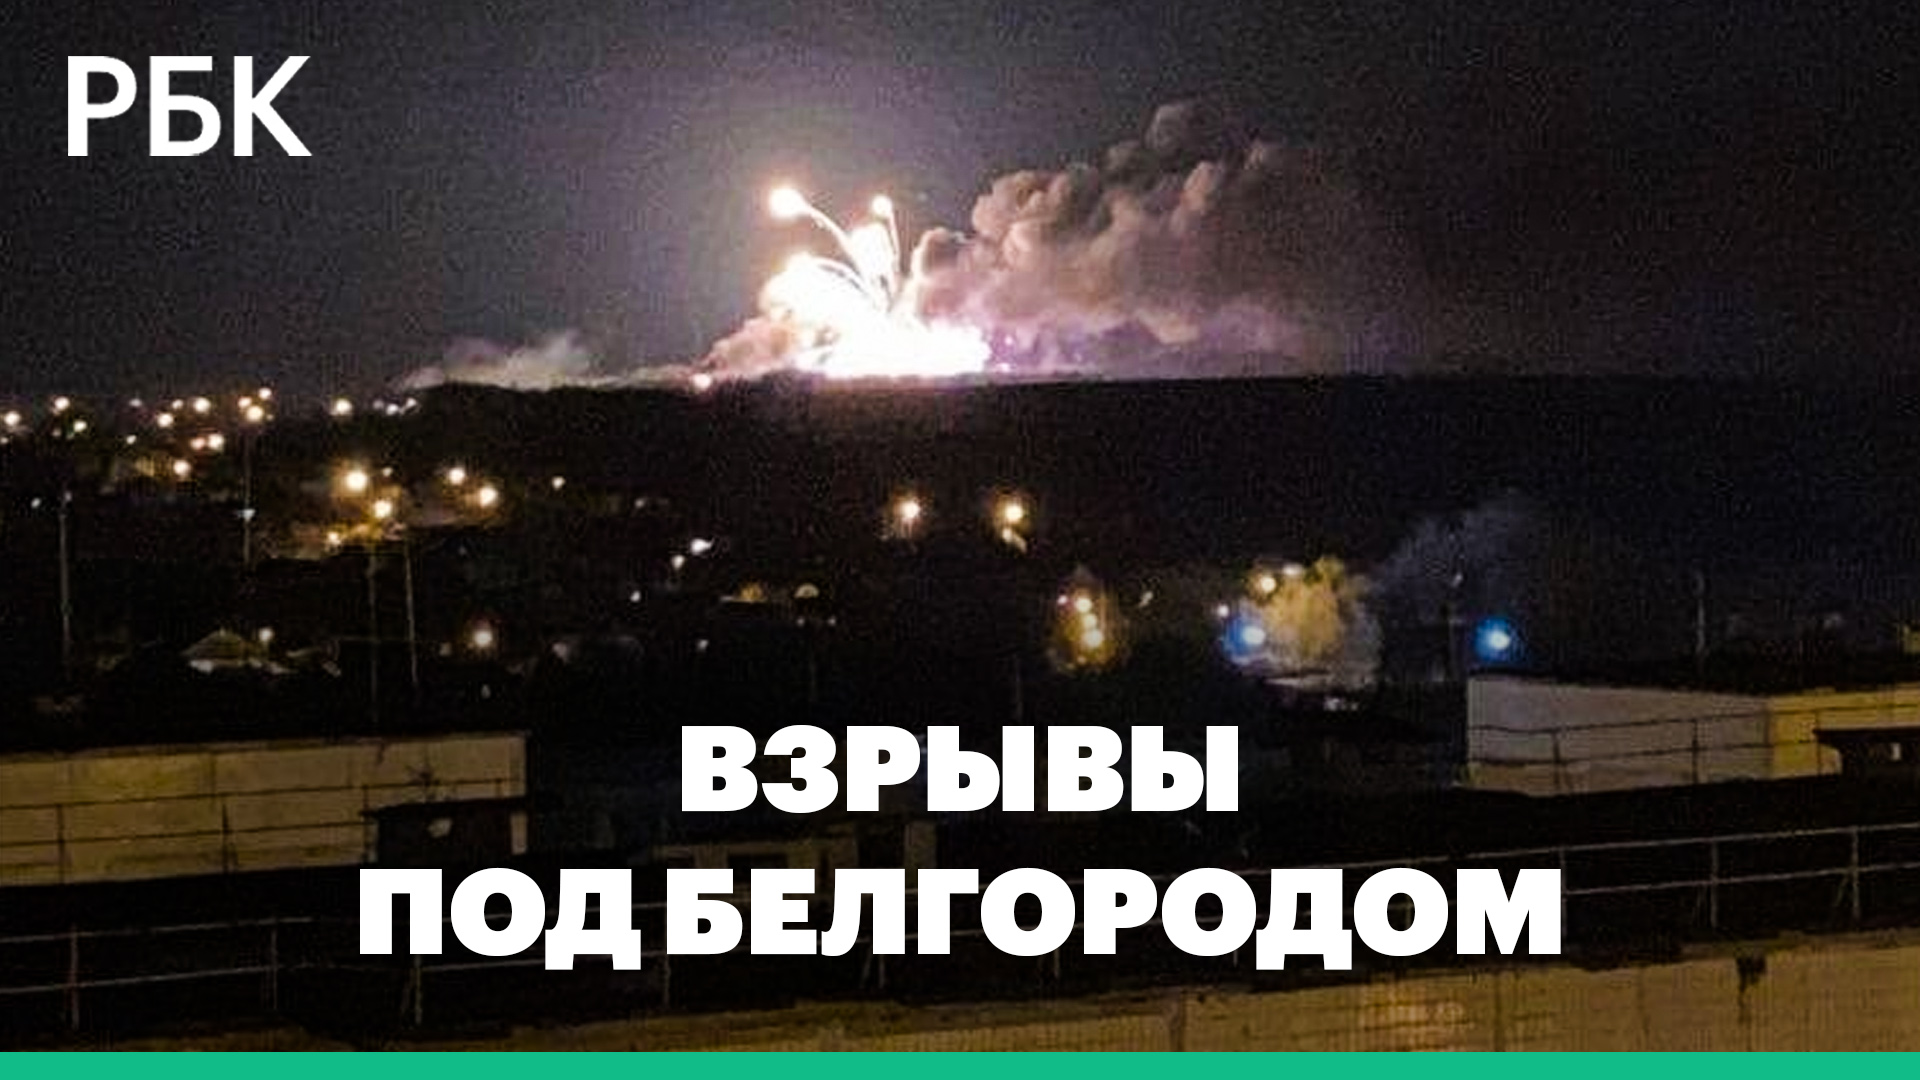 Белгородский губернатор сообщил о взрывах на российской территории рядом с украинской границей